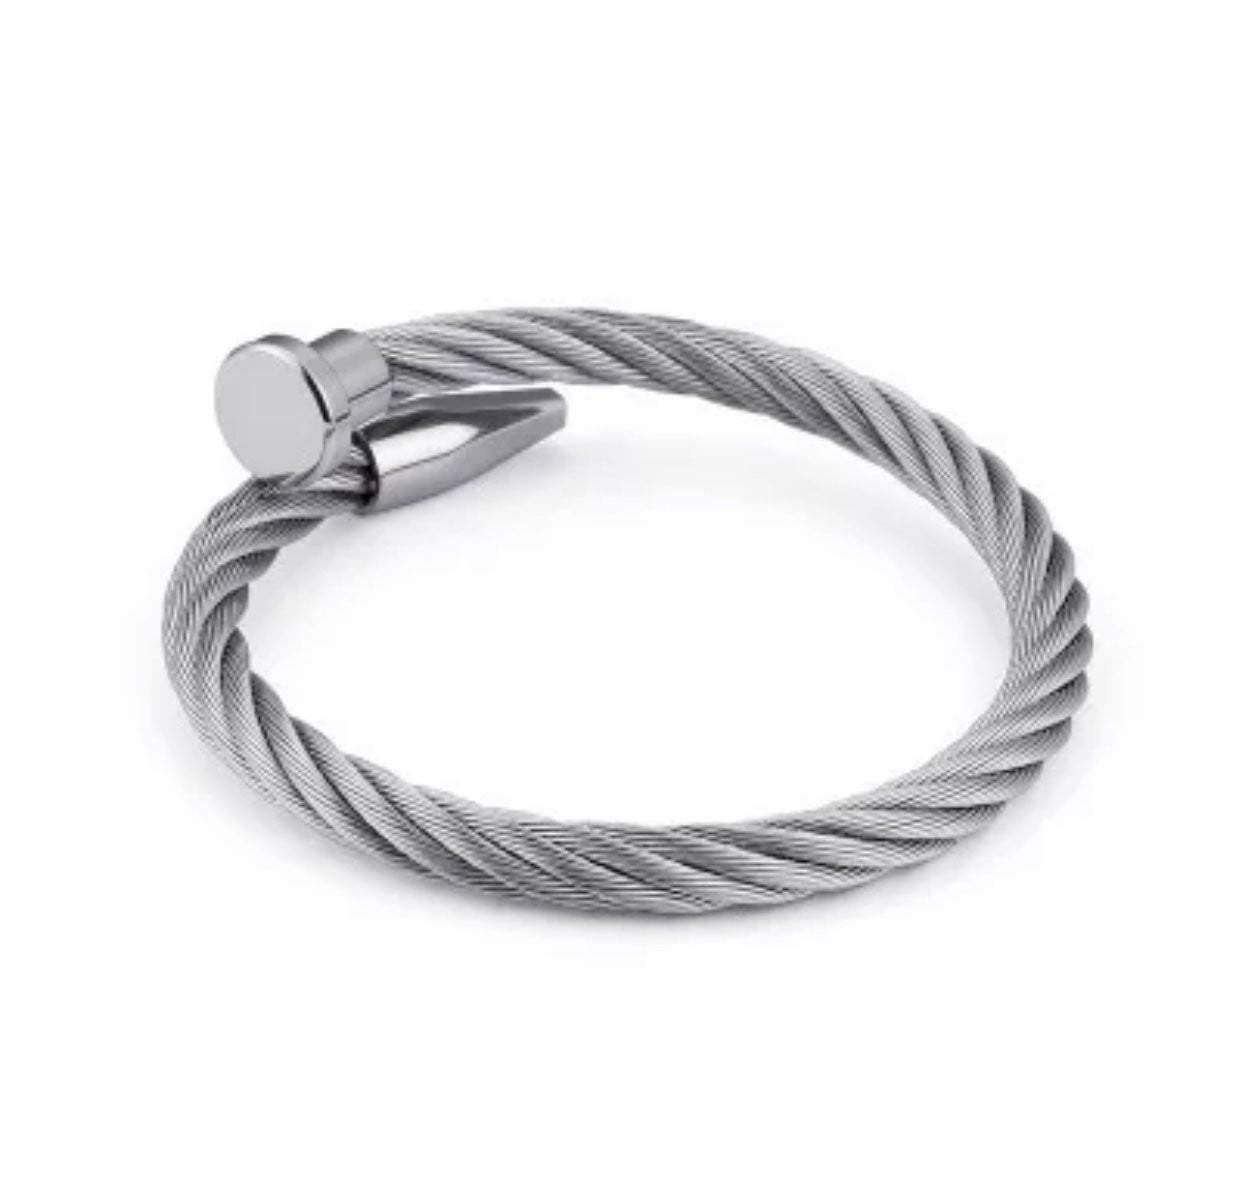 Rope bracelet wire bracelets spiked bracelet